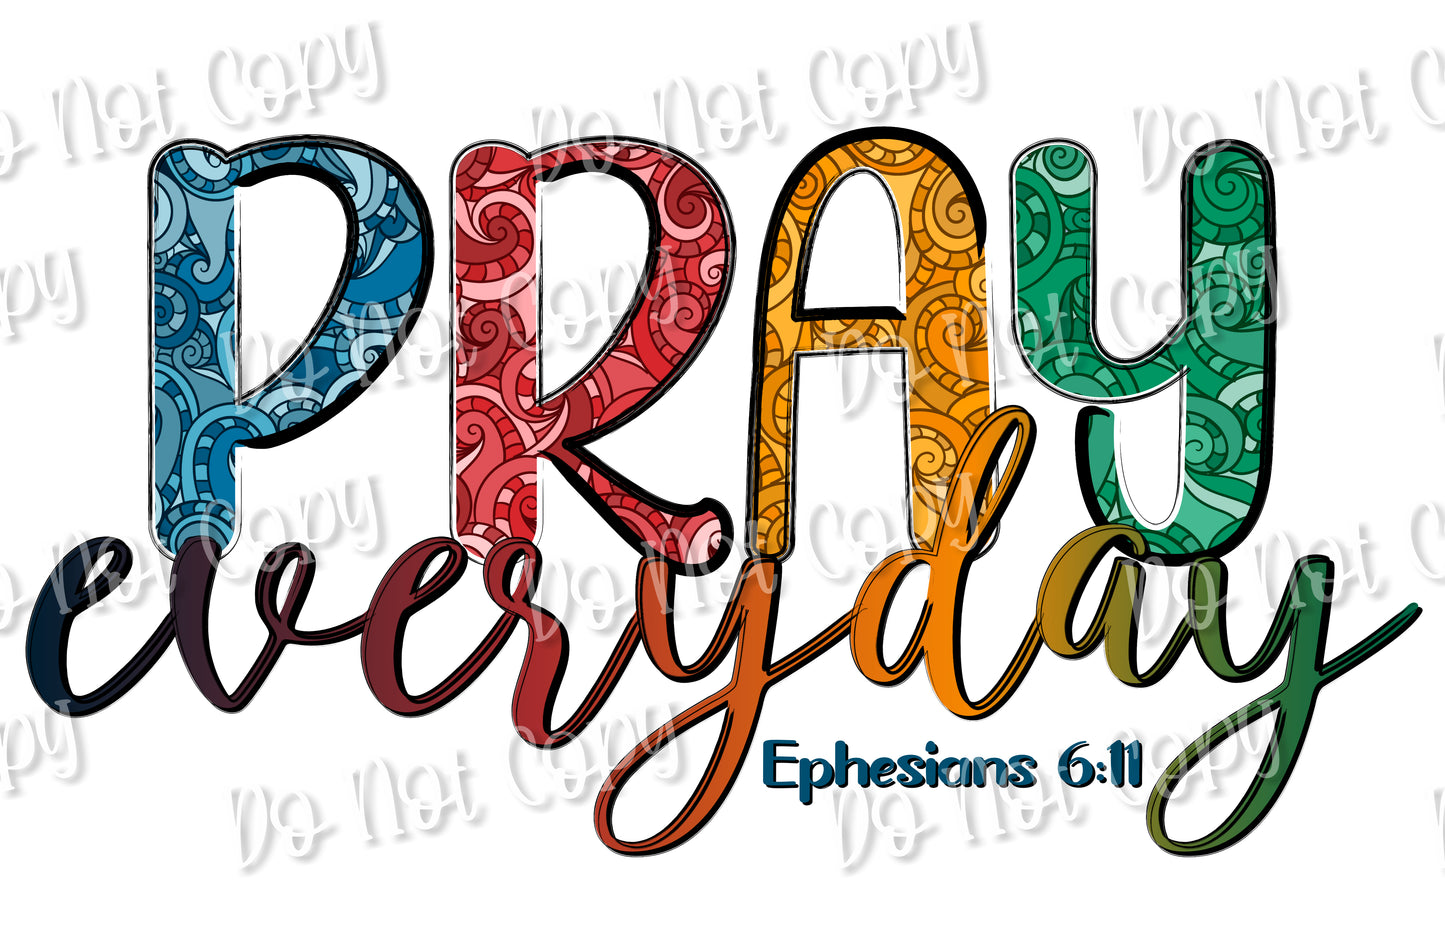 Pray Everyday